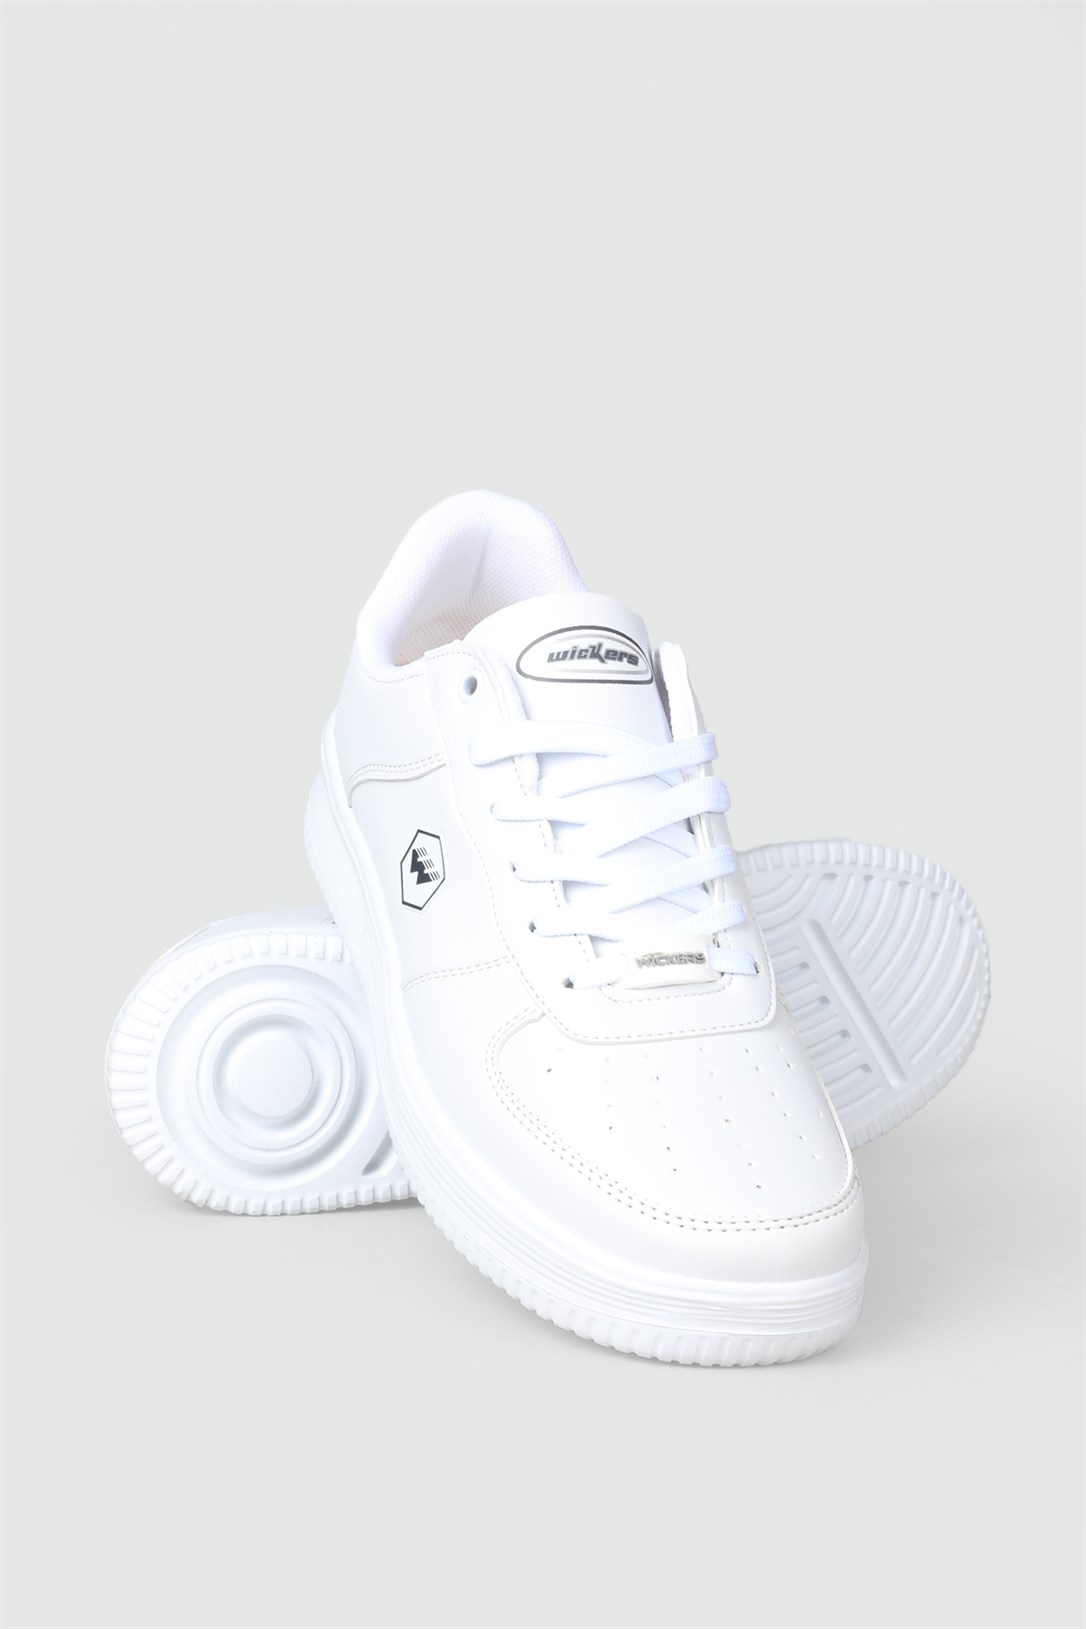 Wickers Sneakers Beyaz Erkek Spor Ayakkabı 2542 | Ayakkabı City